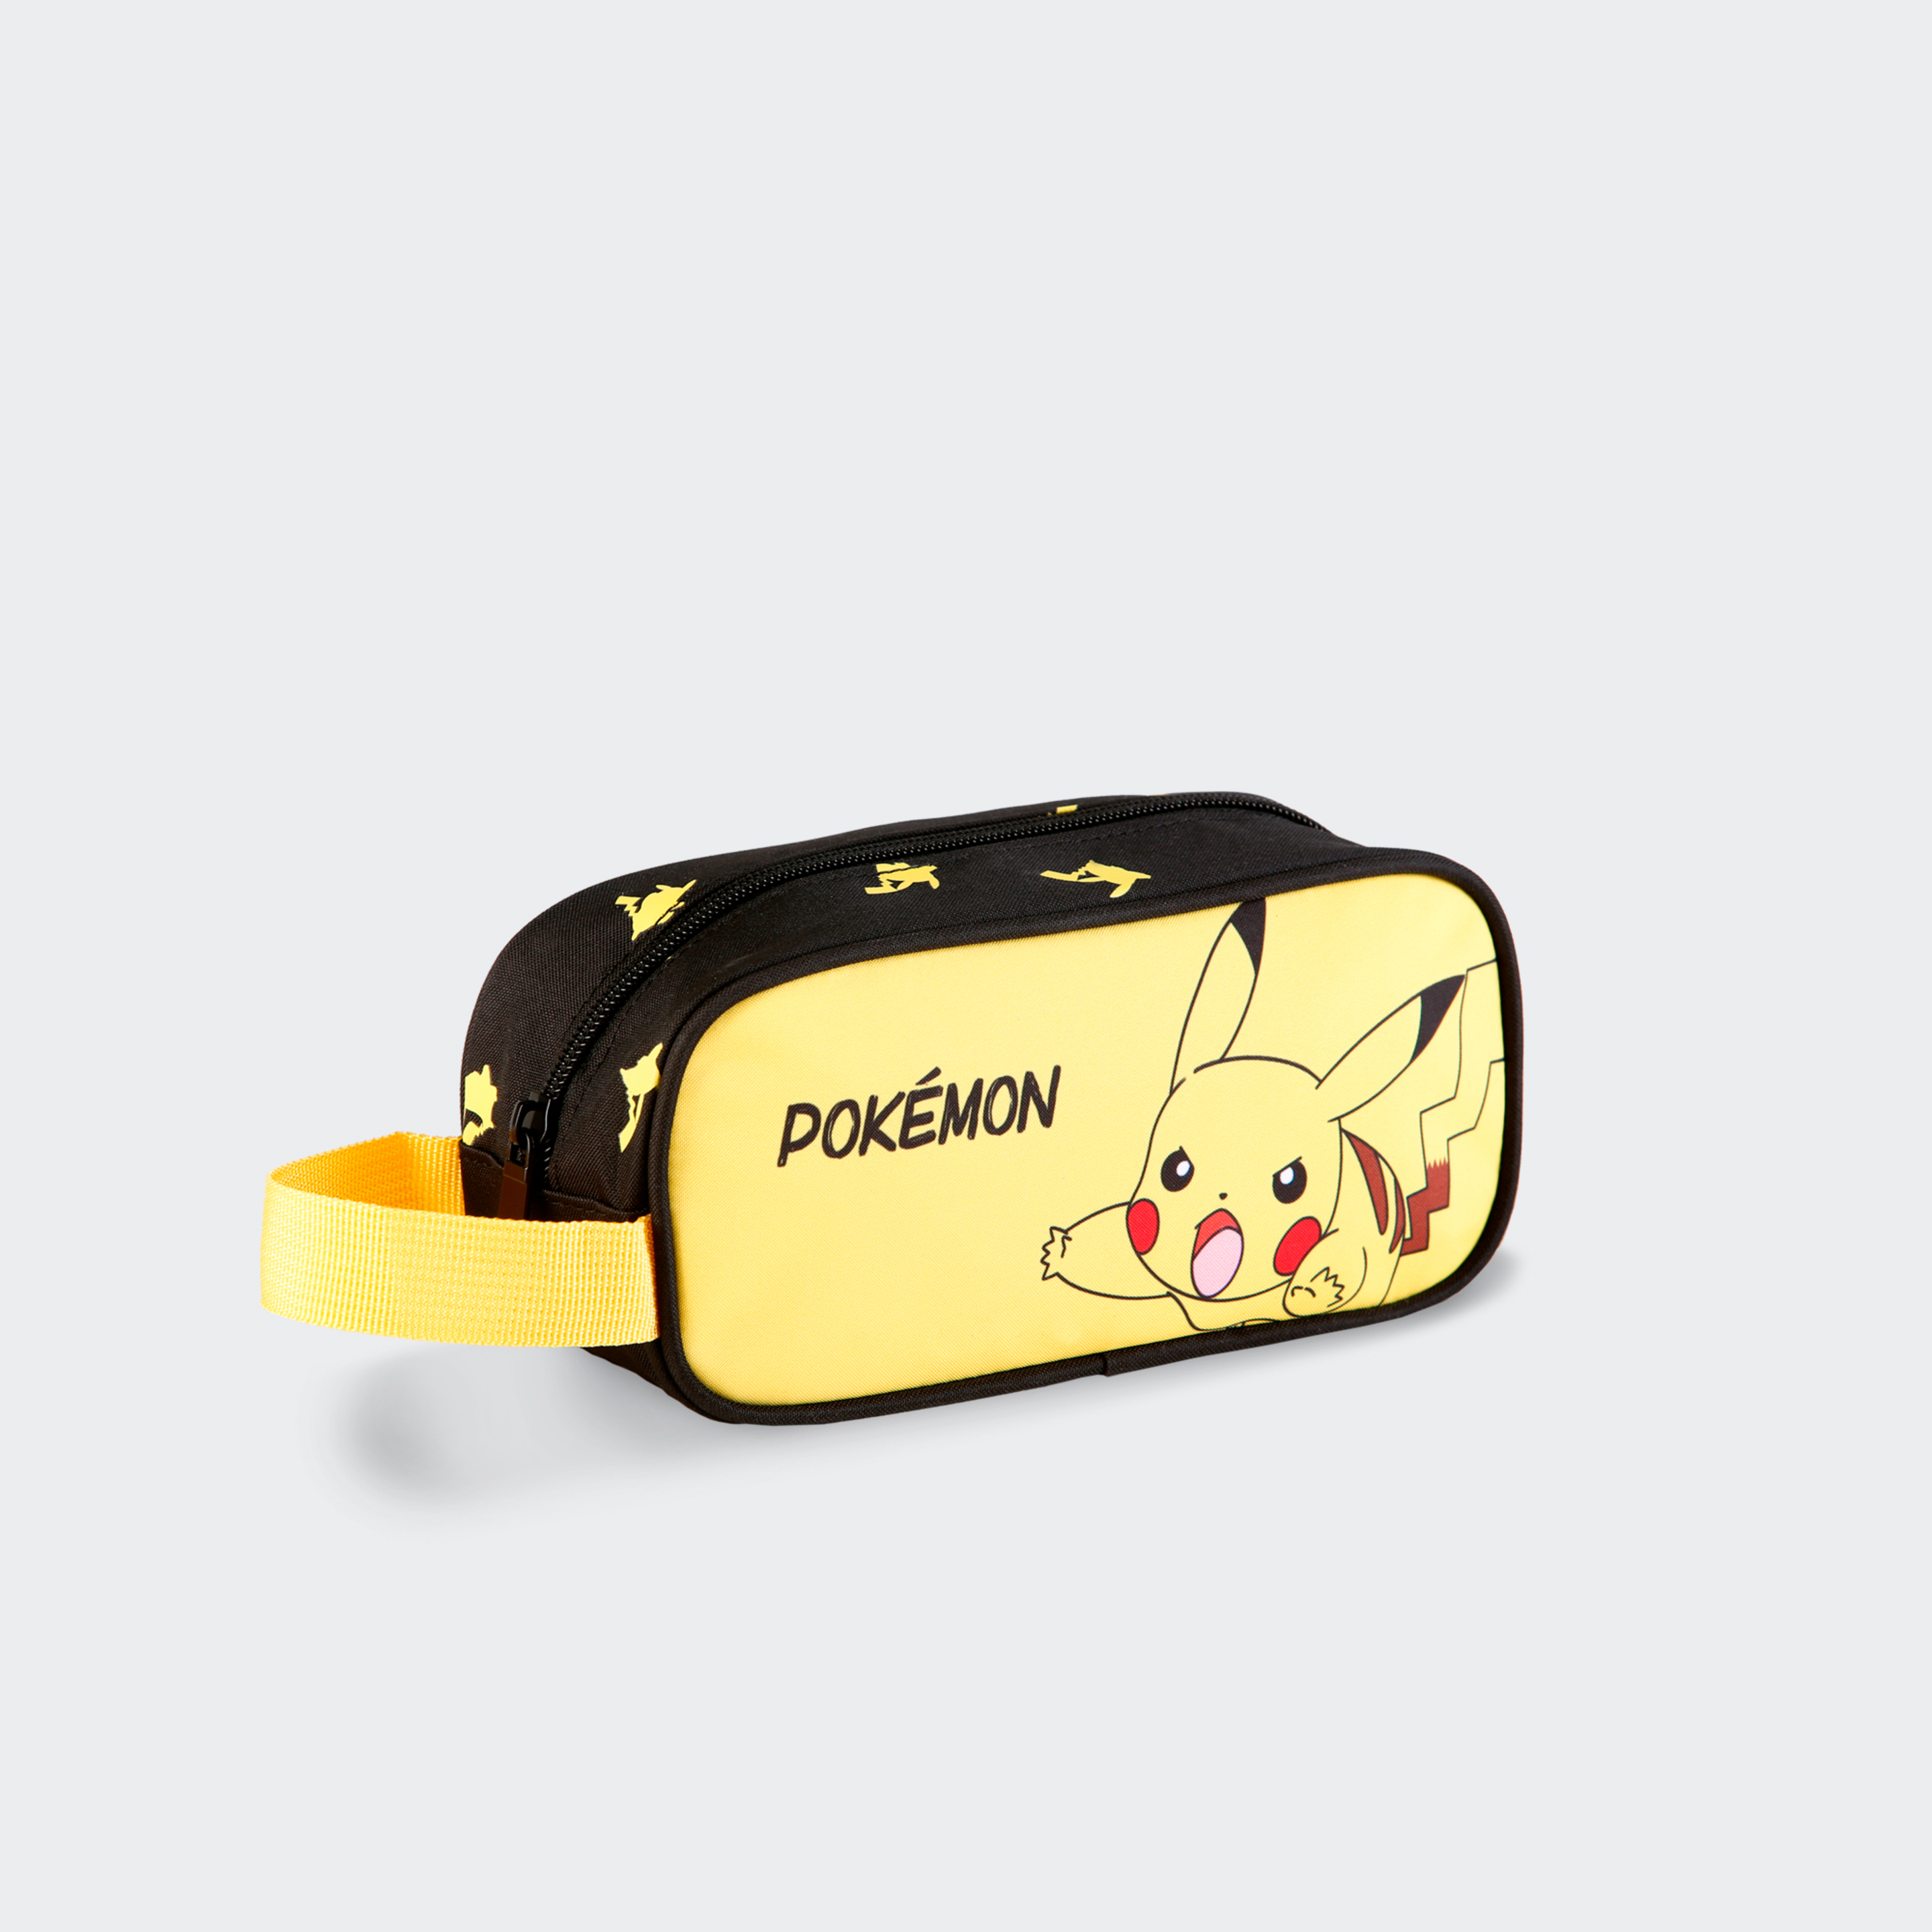 Estojo Pokémon Pikachu Portatodo Gamer Case